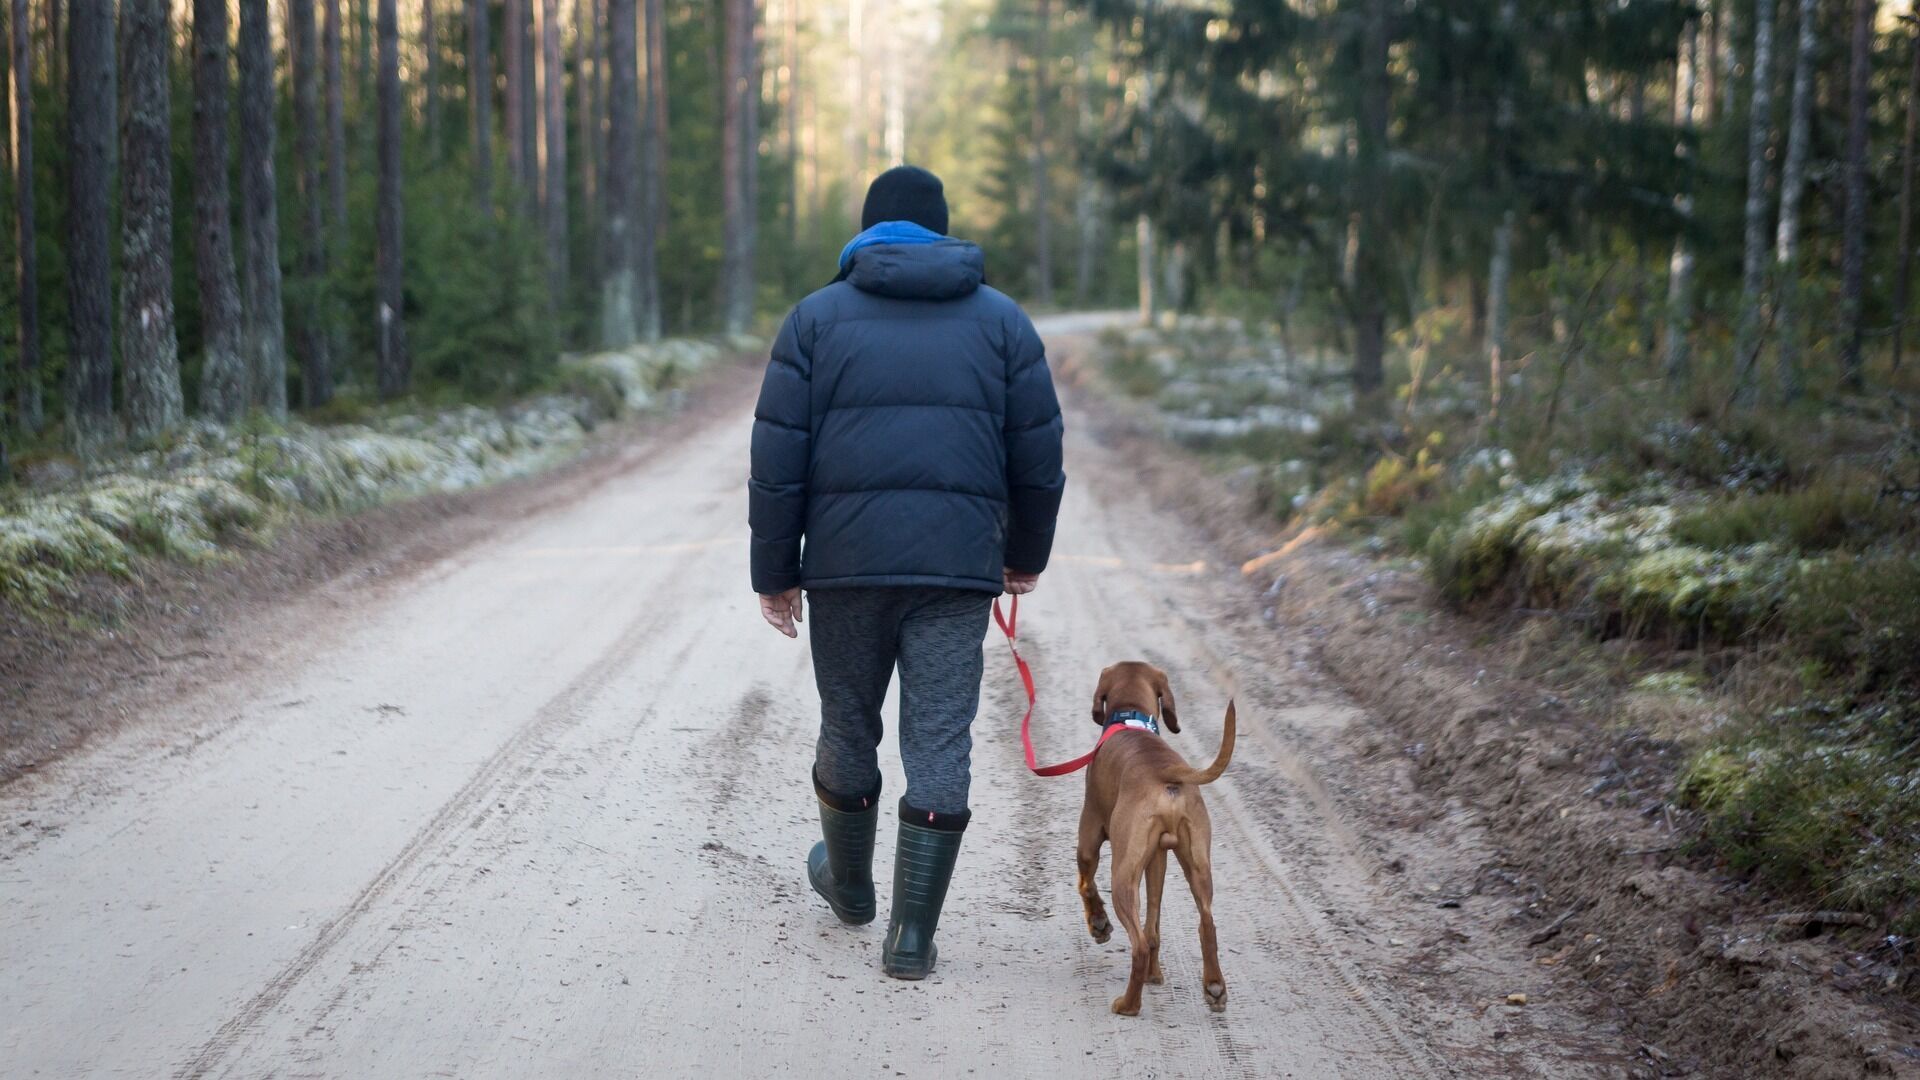 Не оставляйте собаку одну: 4 причины взять животное с собой в путешествие